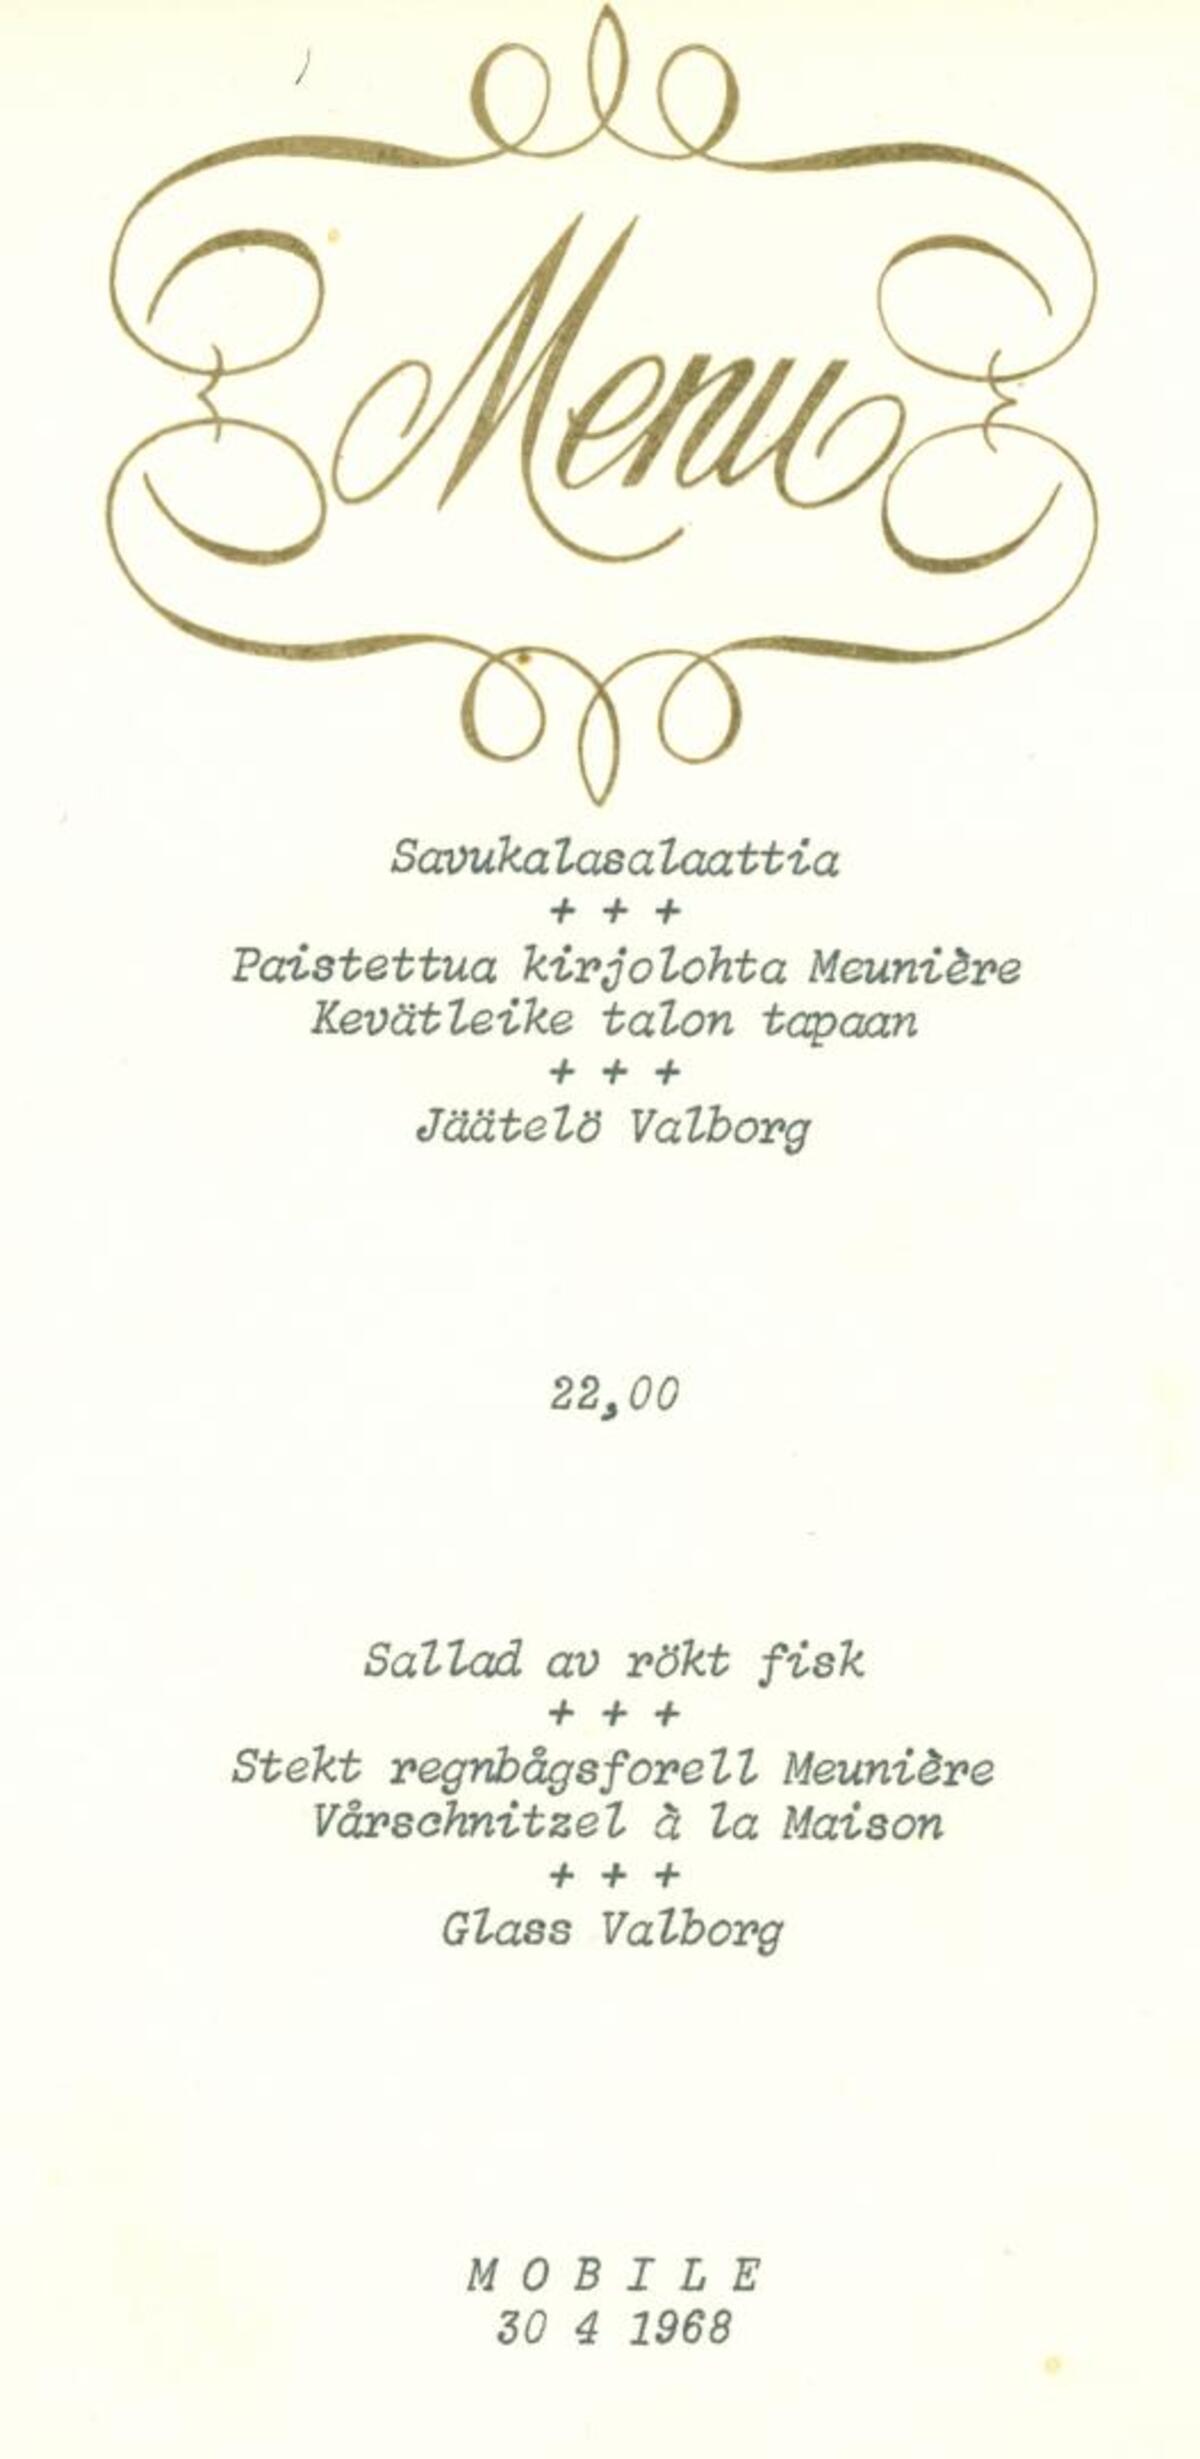 Restaurangerna ordnade också middagar på valborgsmässoafton åtminstone ännu på 1960-talet. Sedermera har firandets tyngdpunkt flyttat till valborgsdagen.  Foto: Hotell- och restaurangmuseet